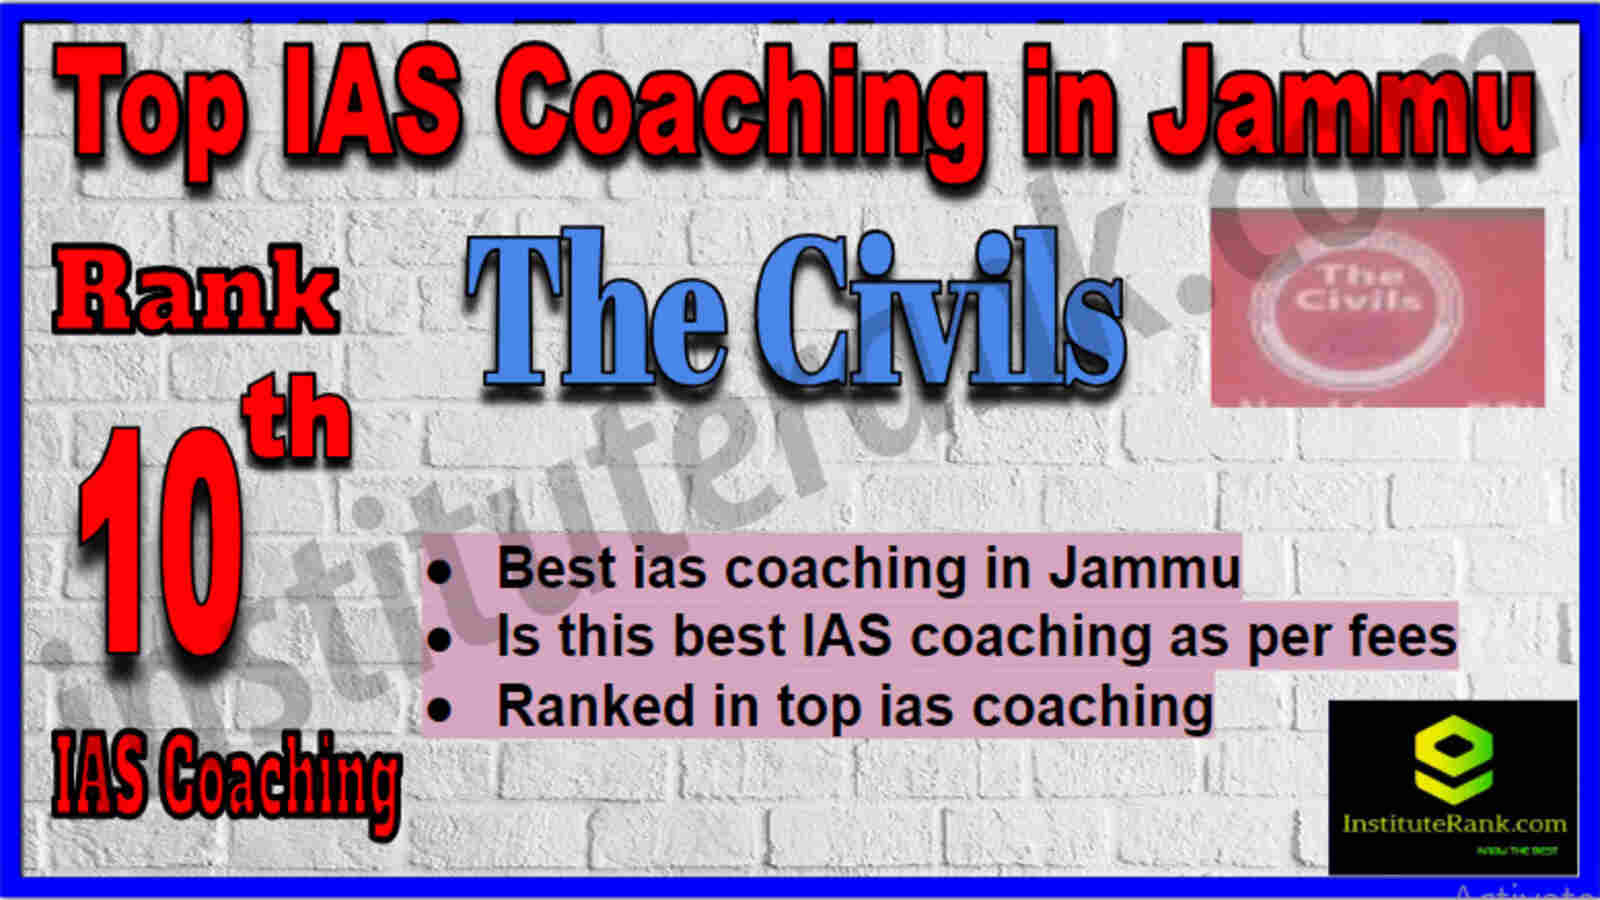 Rank 10 Top IAS Coaching in Jammu